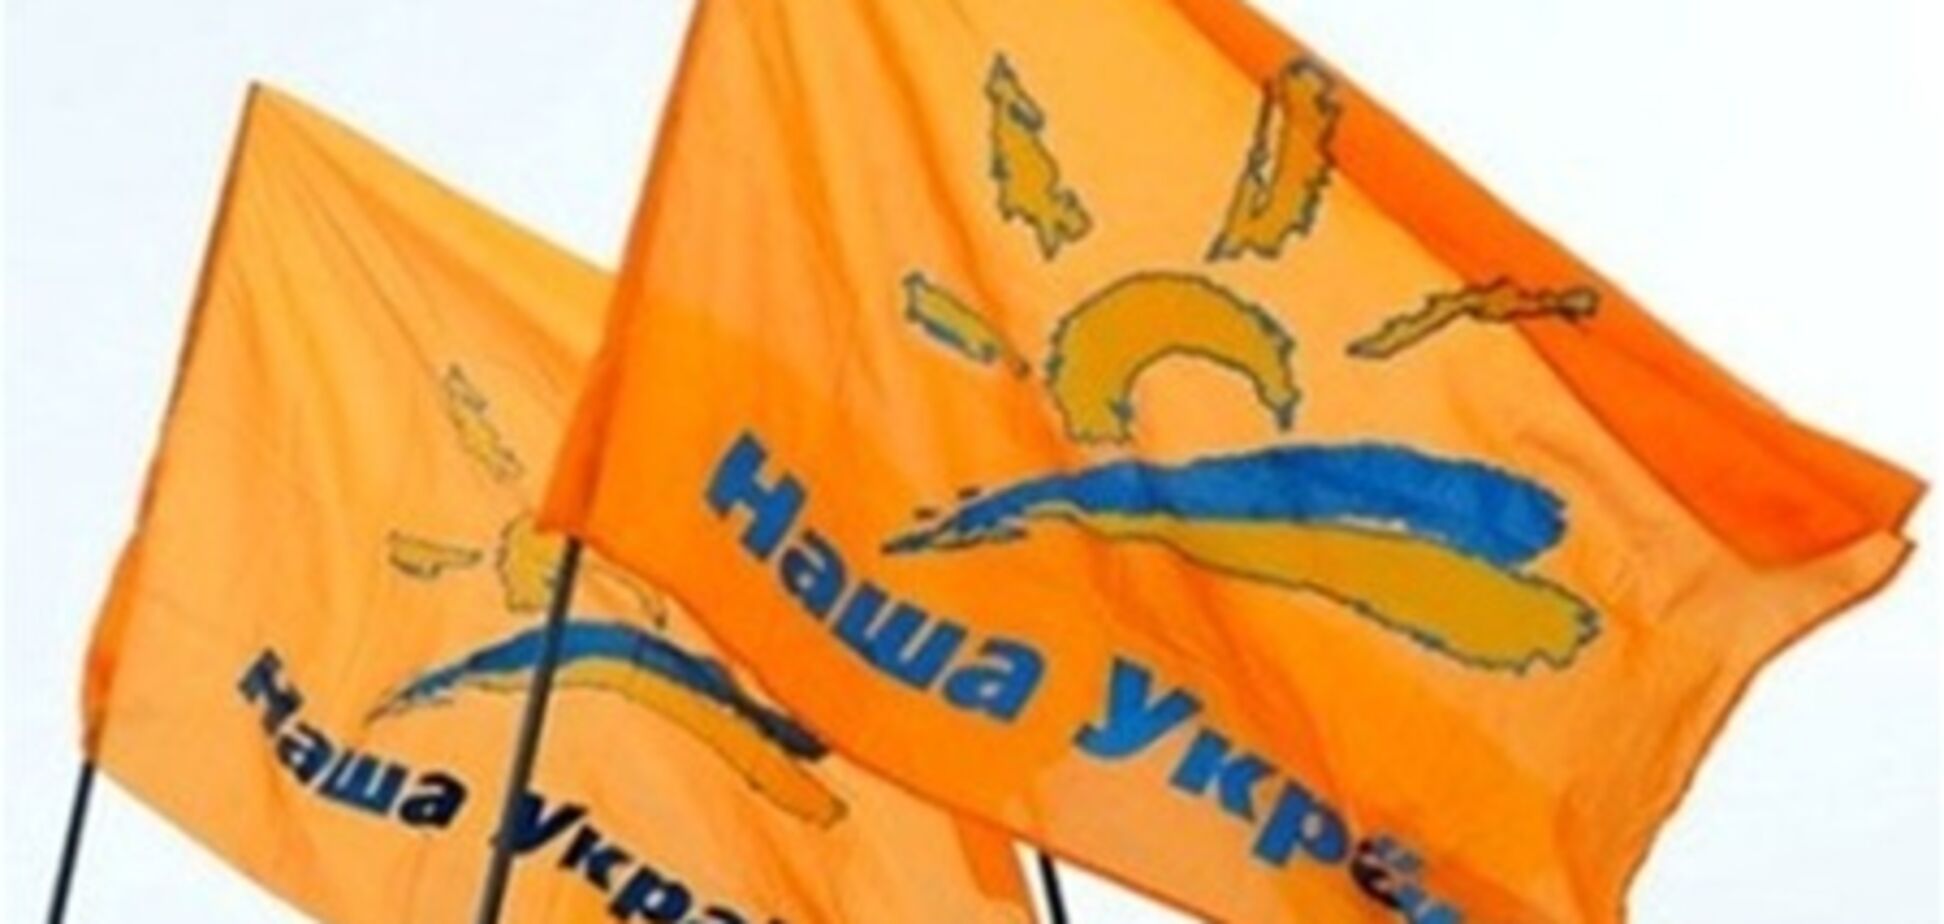 Ющенко собирает 'Нашу Украину' 18 мая